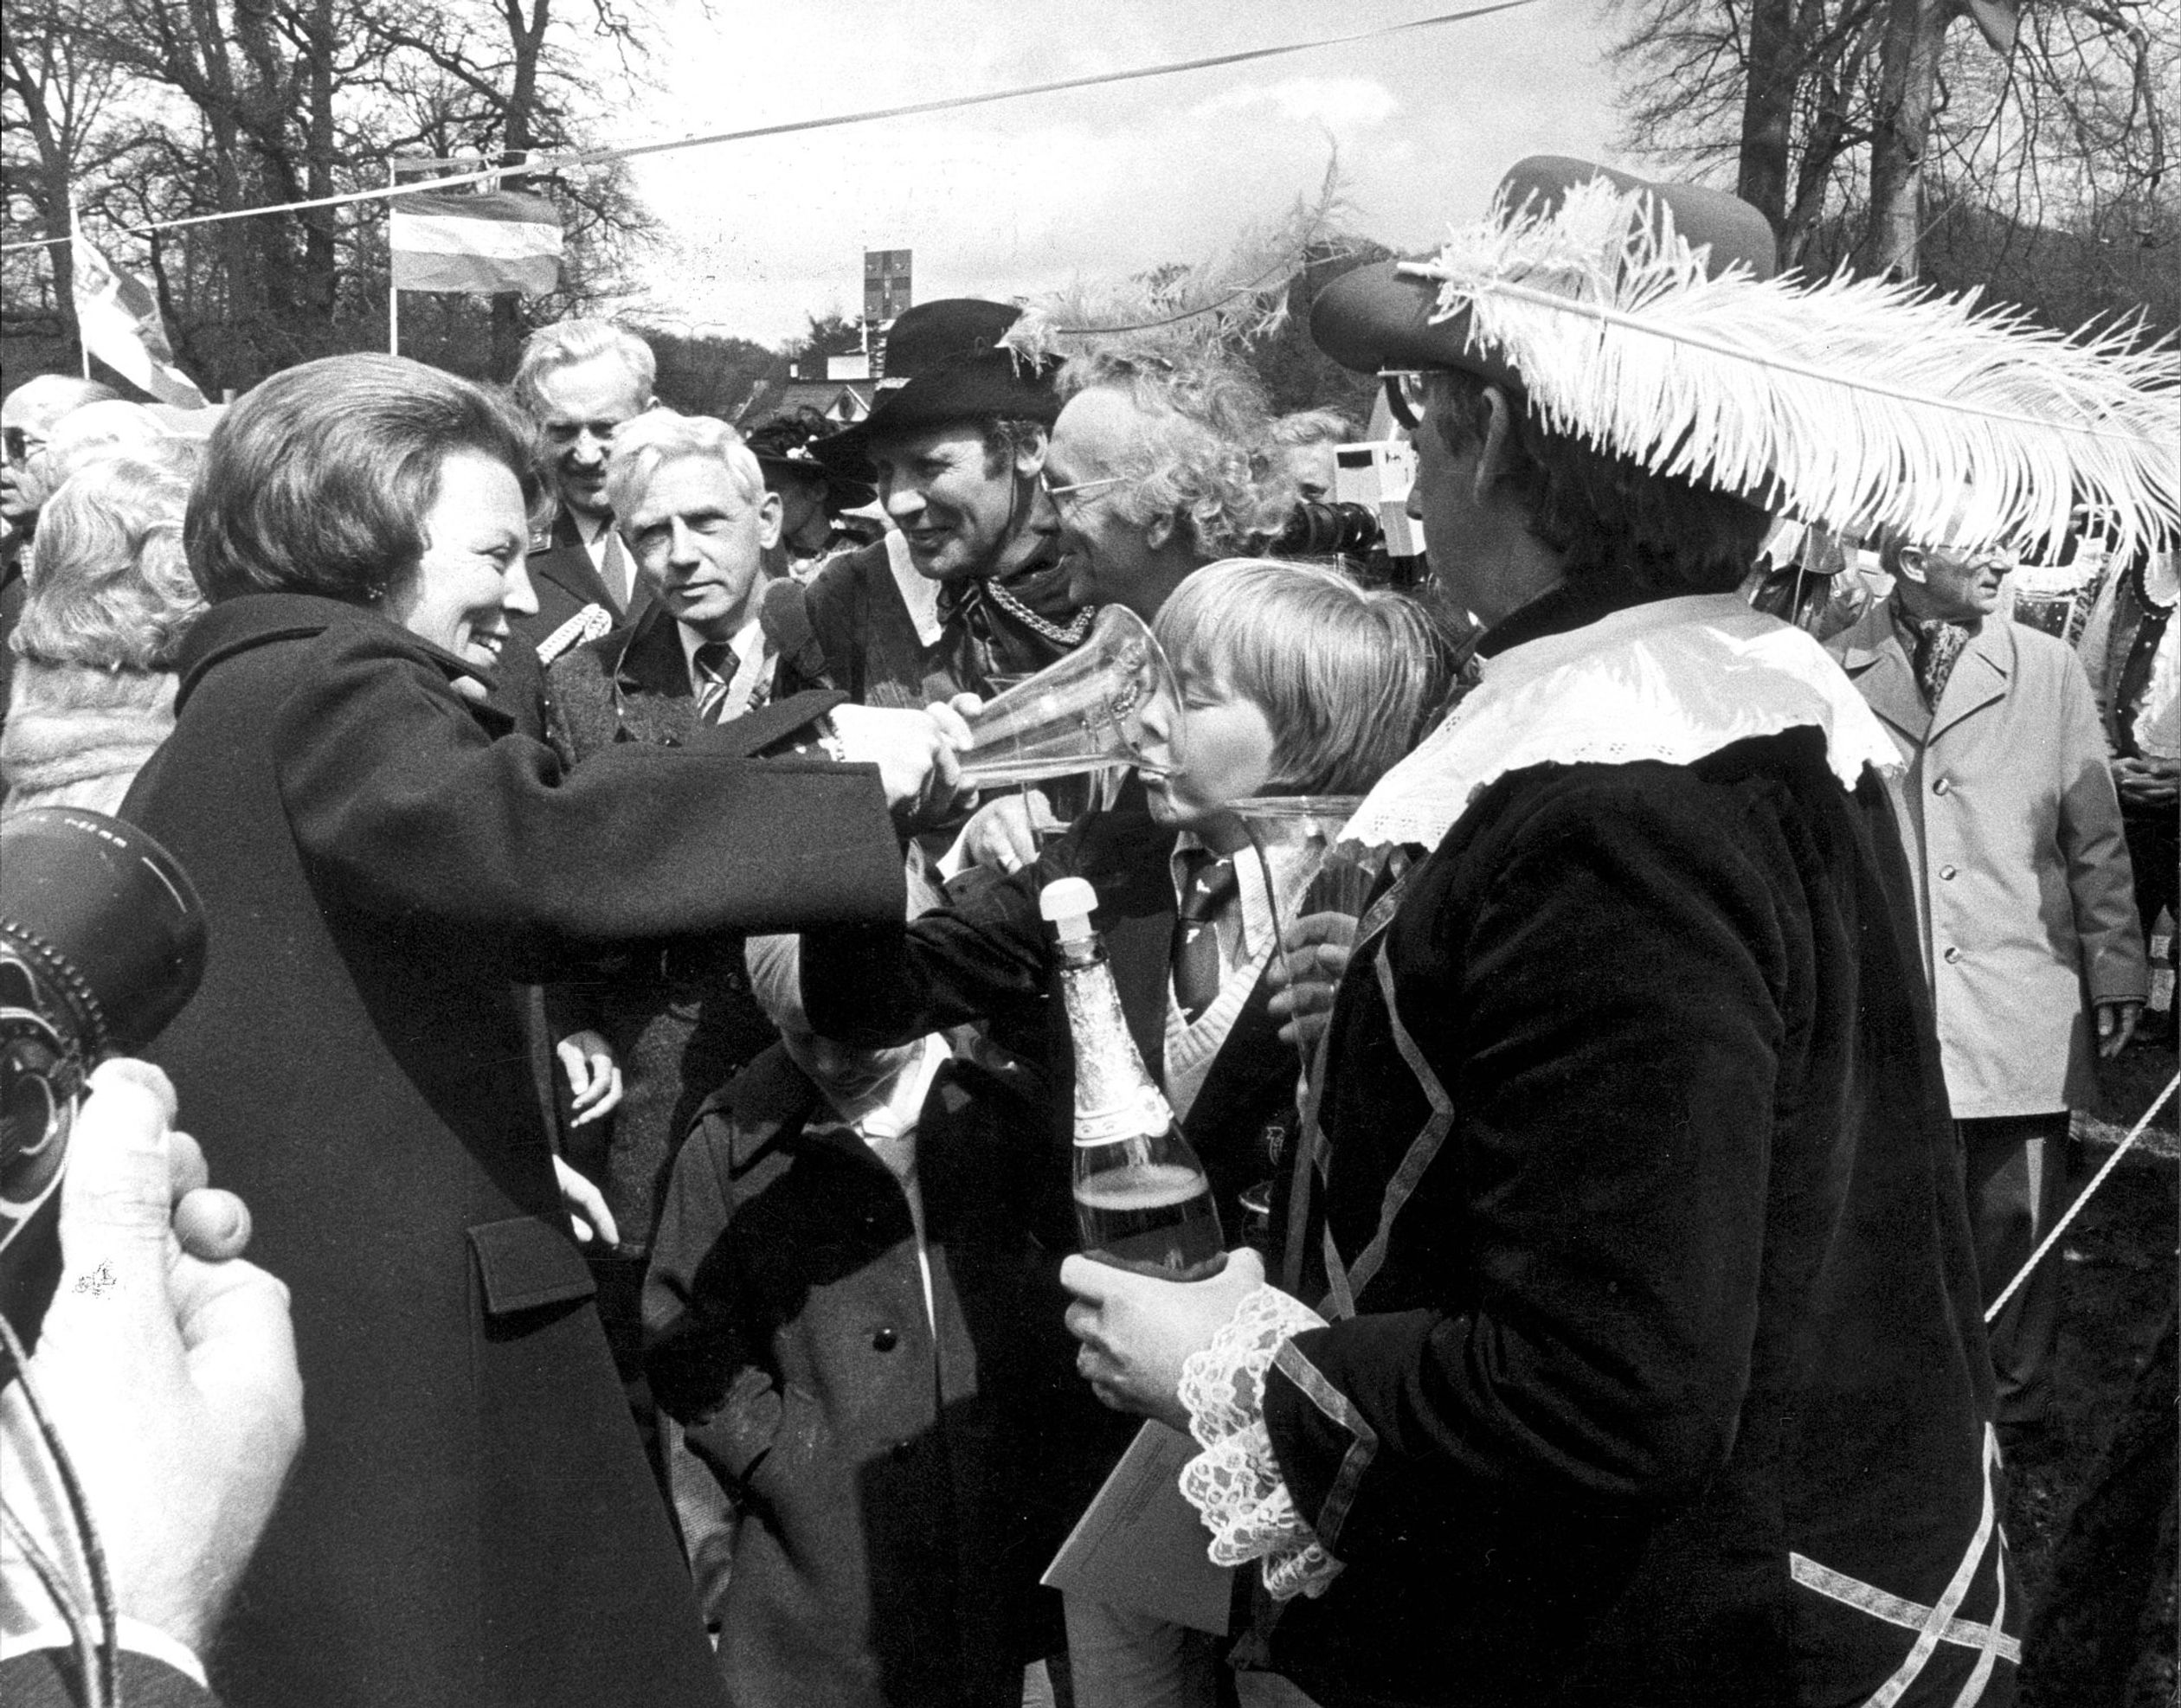 Wat een bijzondere kiekje! Prinses Beatrix geeft haar zoon Prins Alexander een slokje champagne uit een speciaal glas dat haar wordt aangeboden tijdens een wandeling voor het paleis (1979).